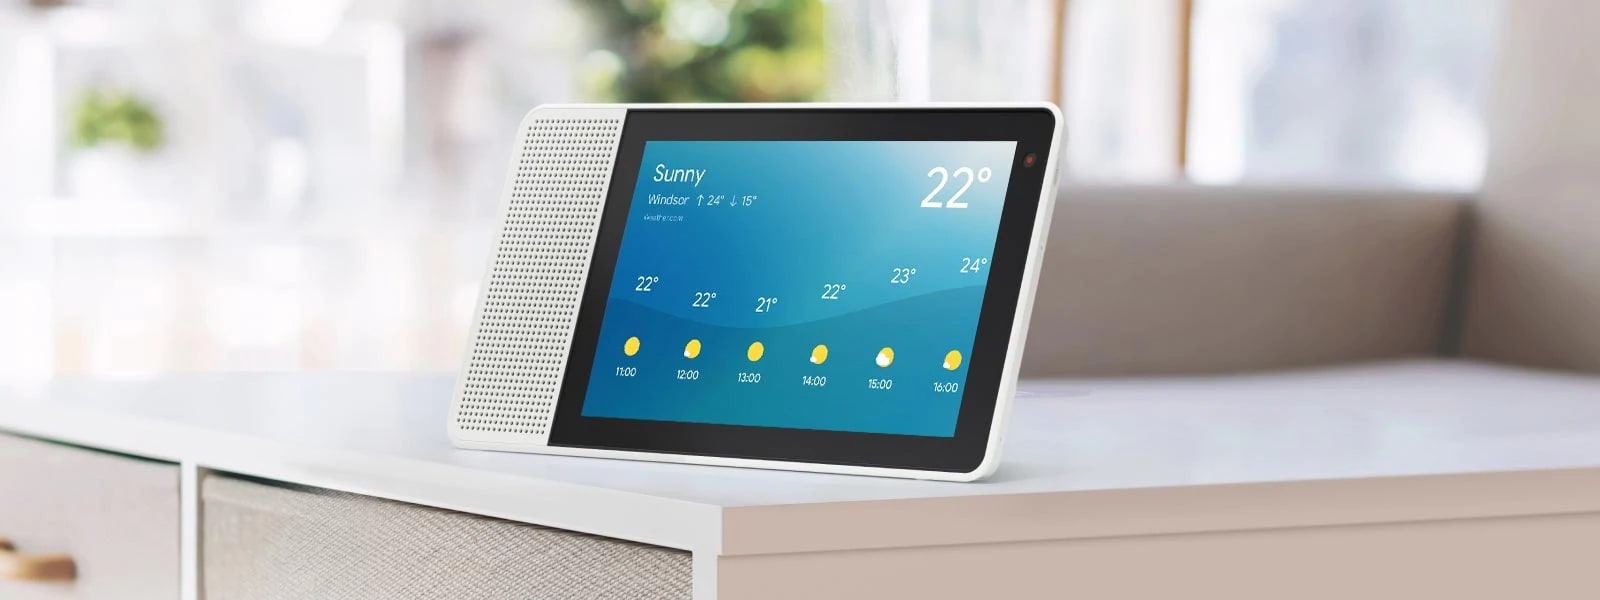 Lenovo Smart Display vous prépare à répondre à votre journée avec les prévisions météorologiques.